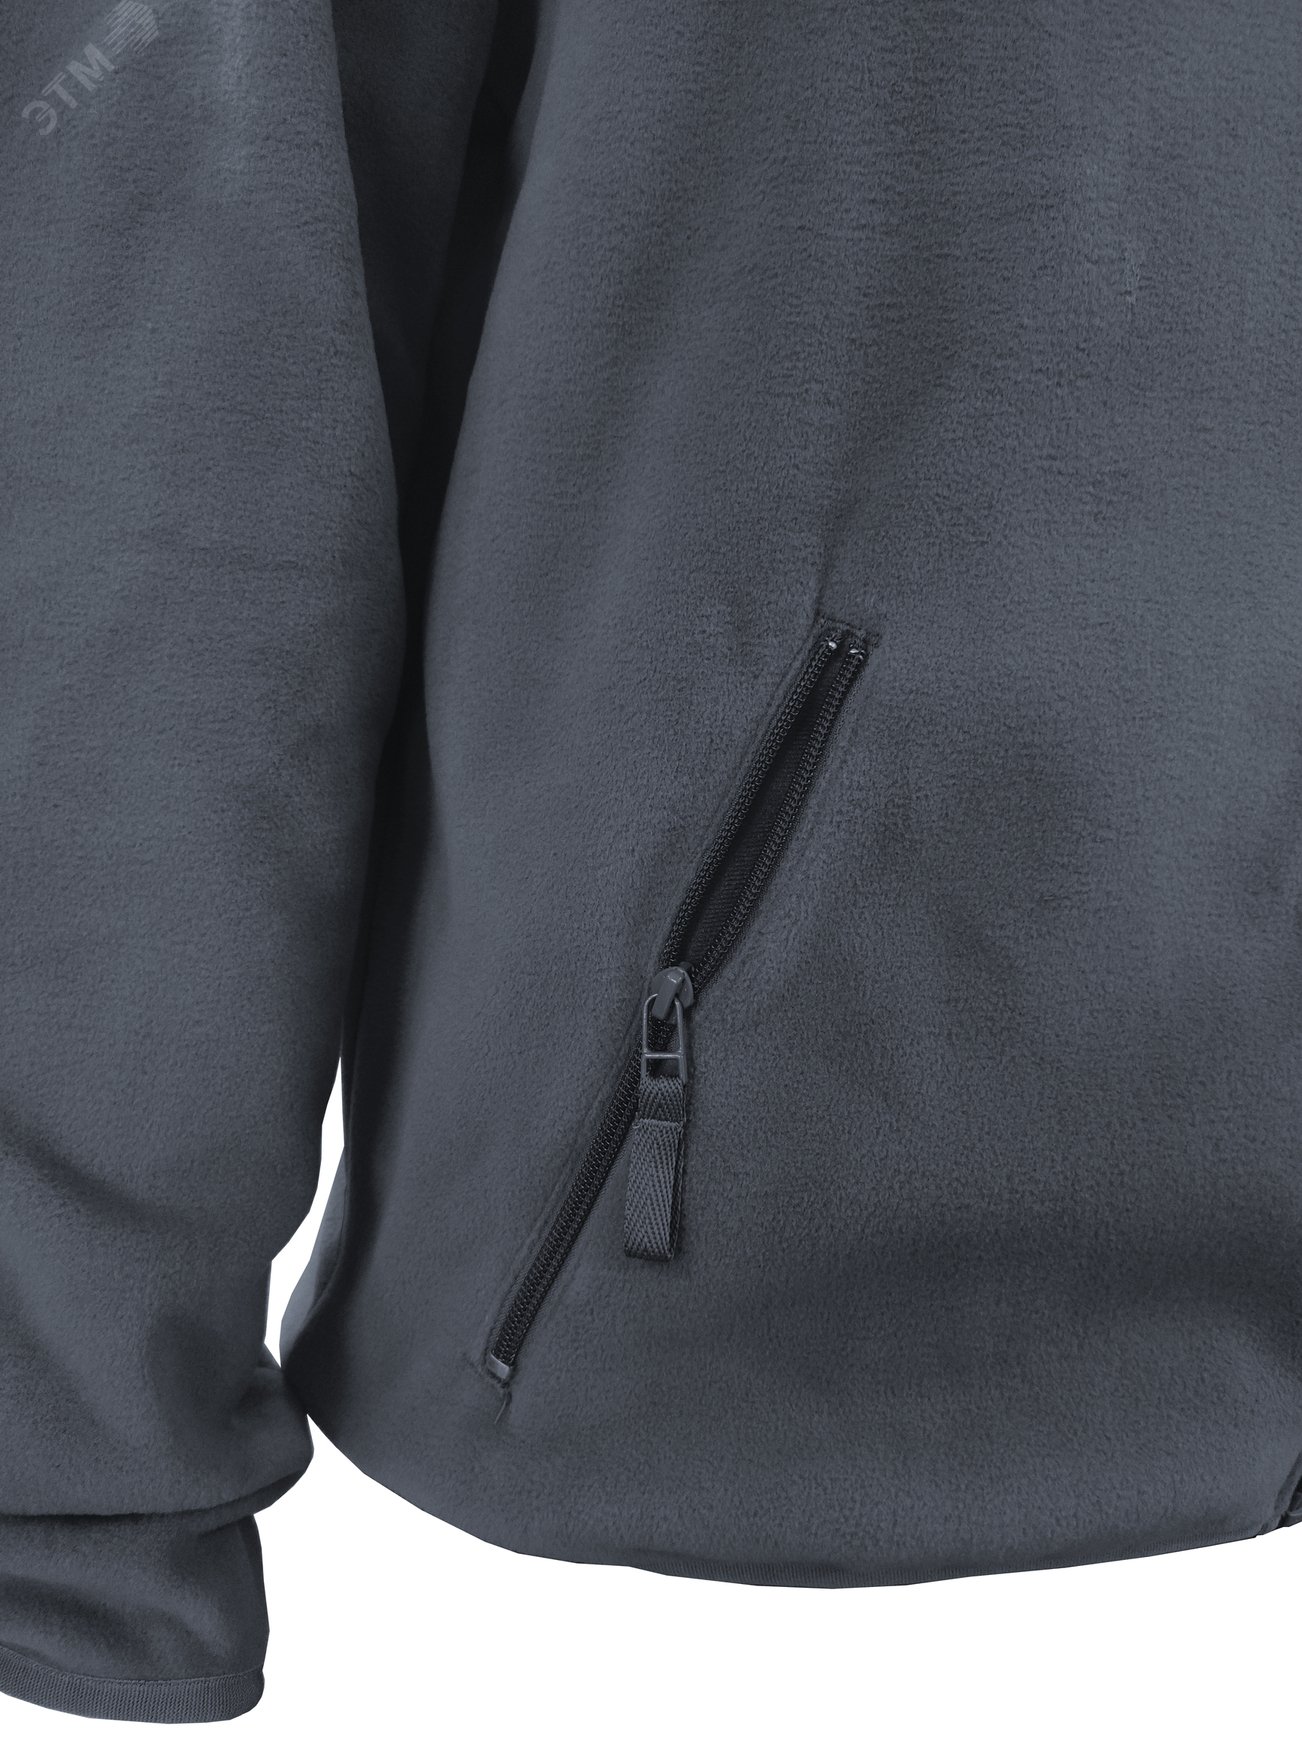 Куртка флисовая арт. JF-01 на молнии цв. серый 60-62 р. 2 ХL 142302 Эталон-Спецодежда - превью 8